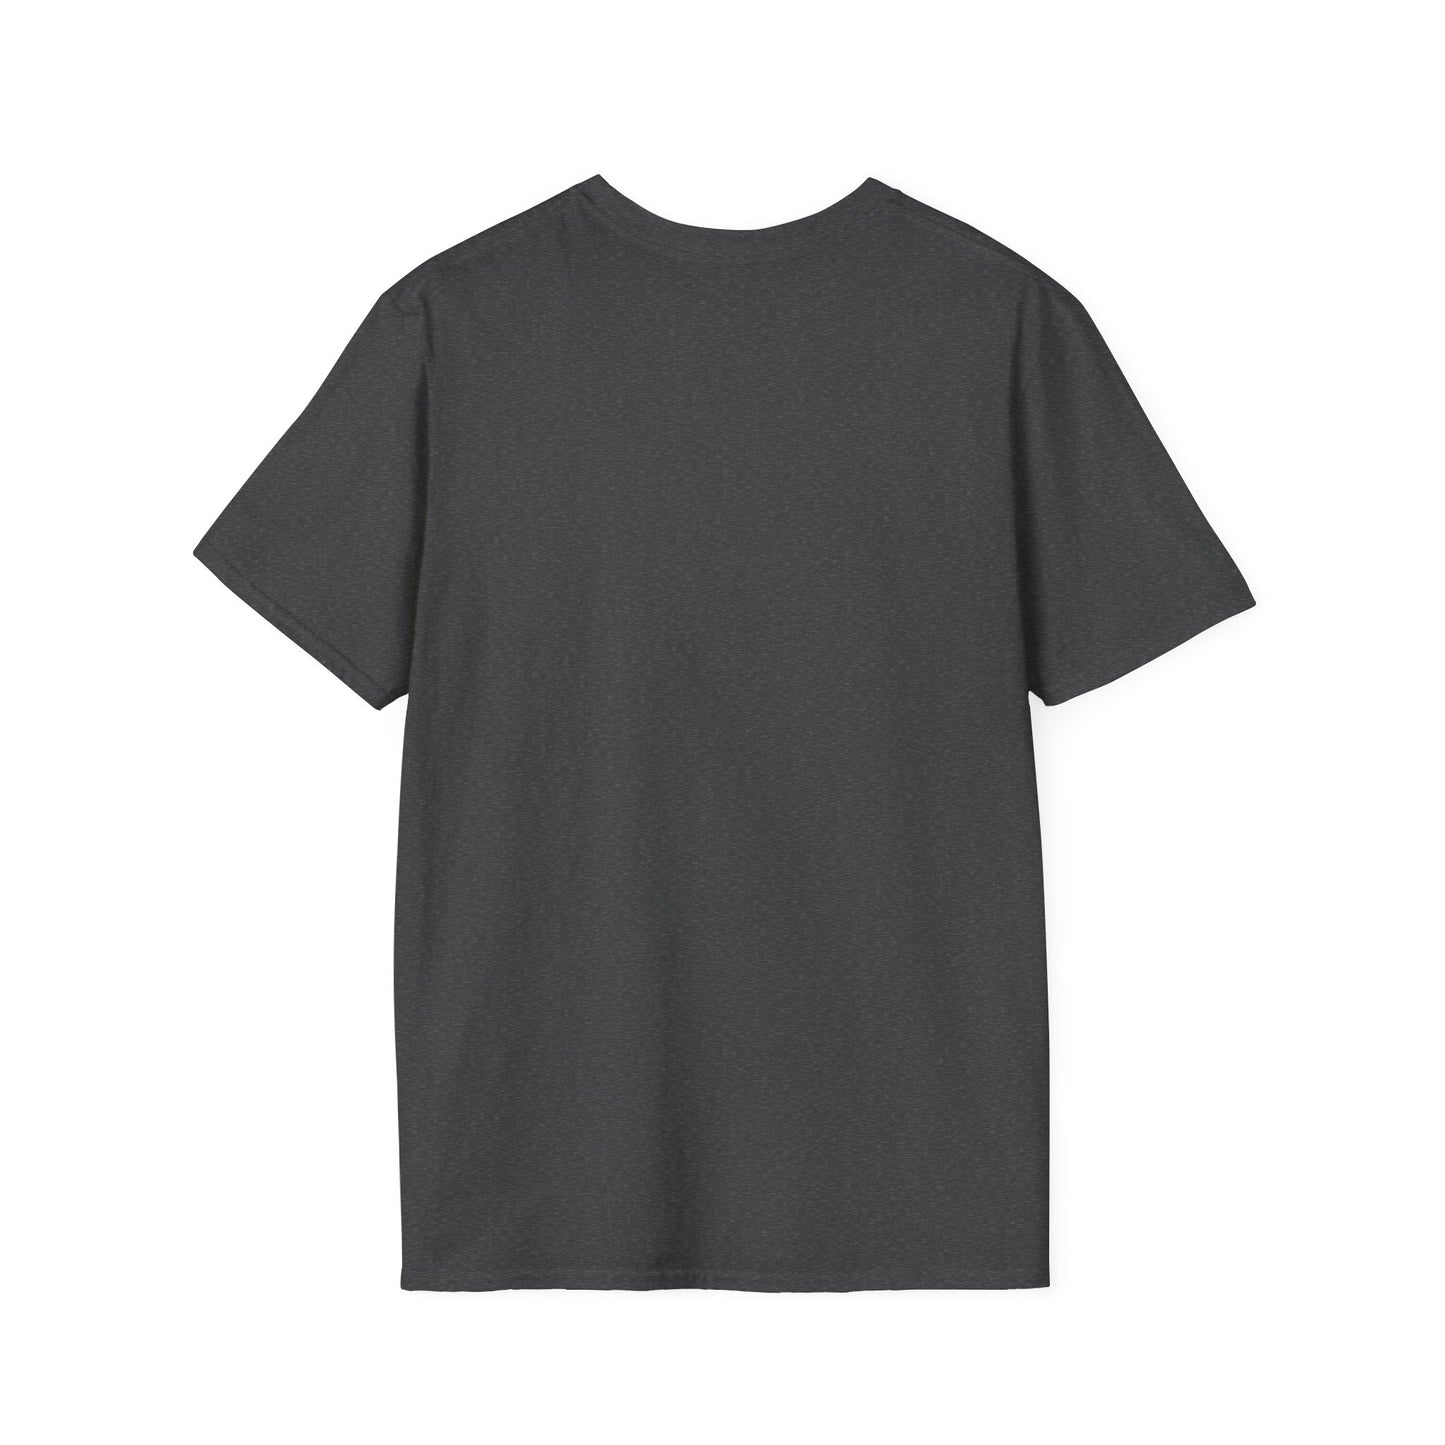 I Got This - God Unisex Softstyle T-Shirt